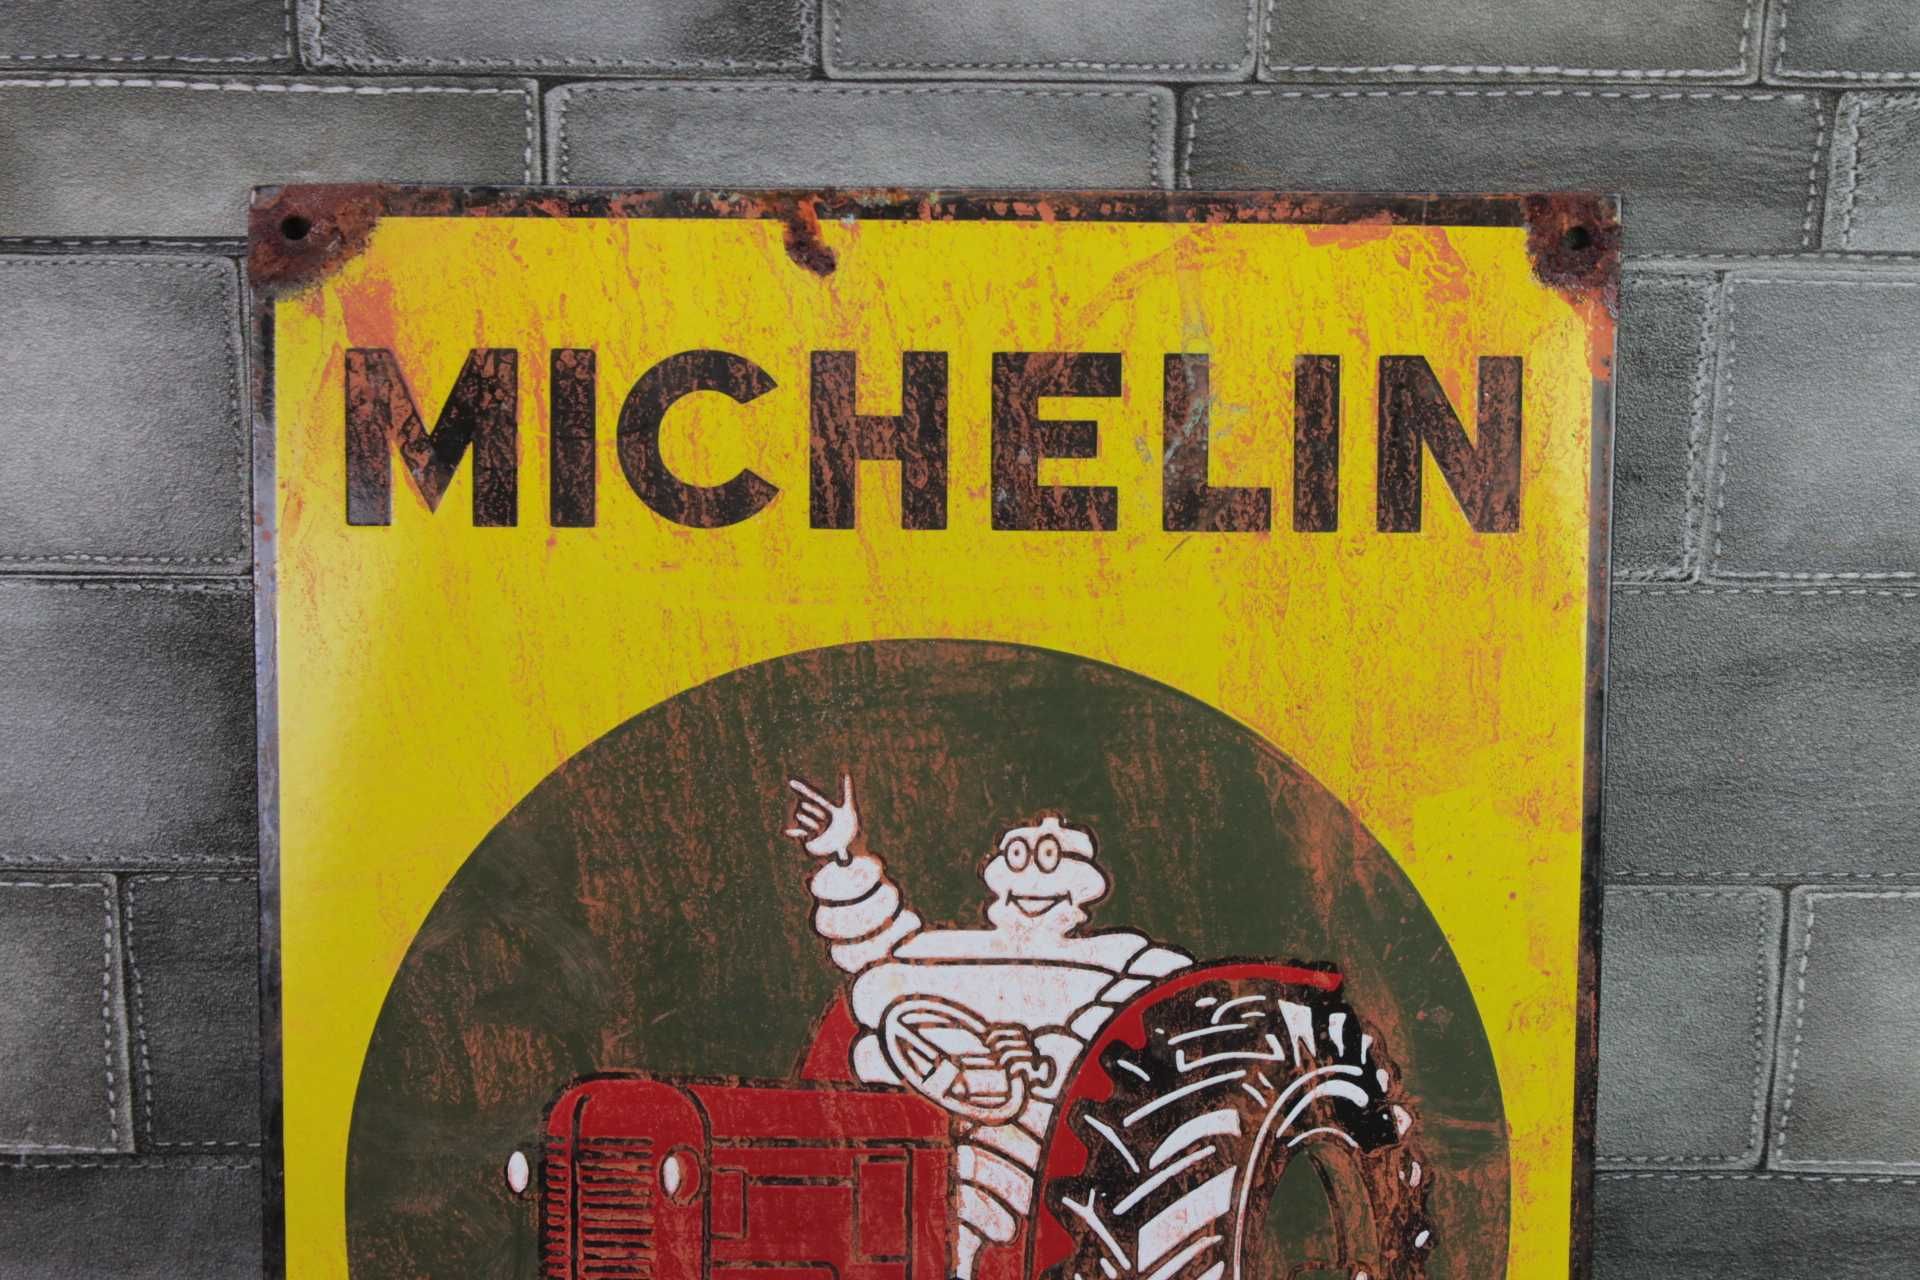 3 Michelin reklama szyld blacha emaliowana 50 x 36